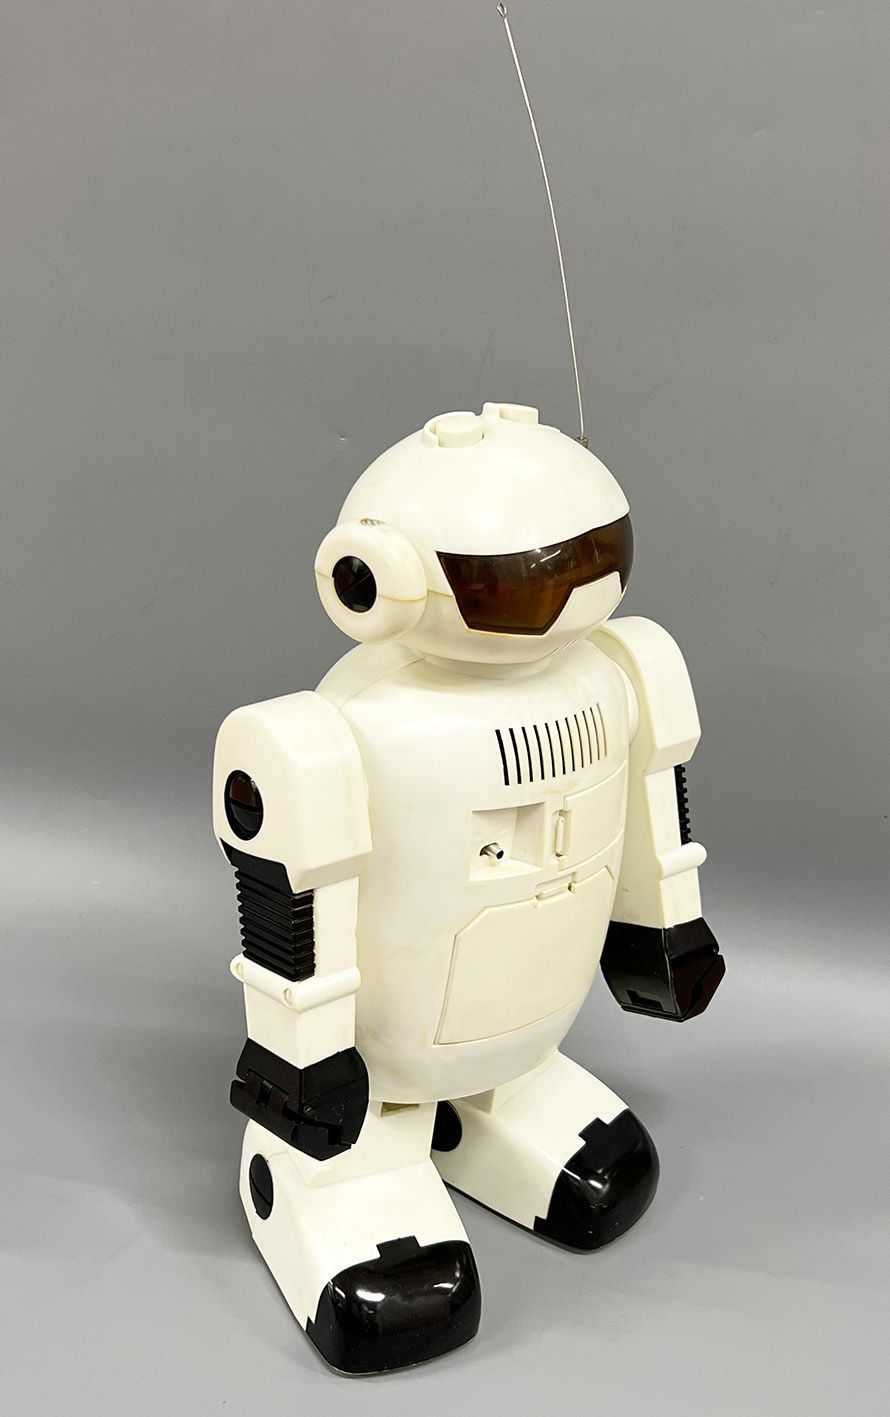 Robot - Mr. Galaxie (Robot qui marche et qui parle)